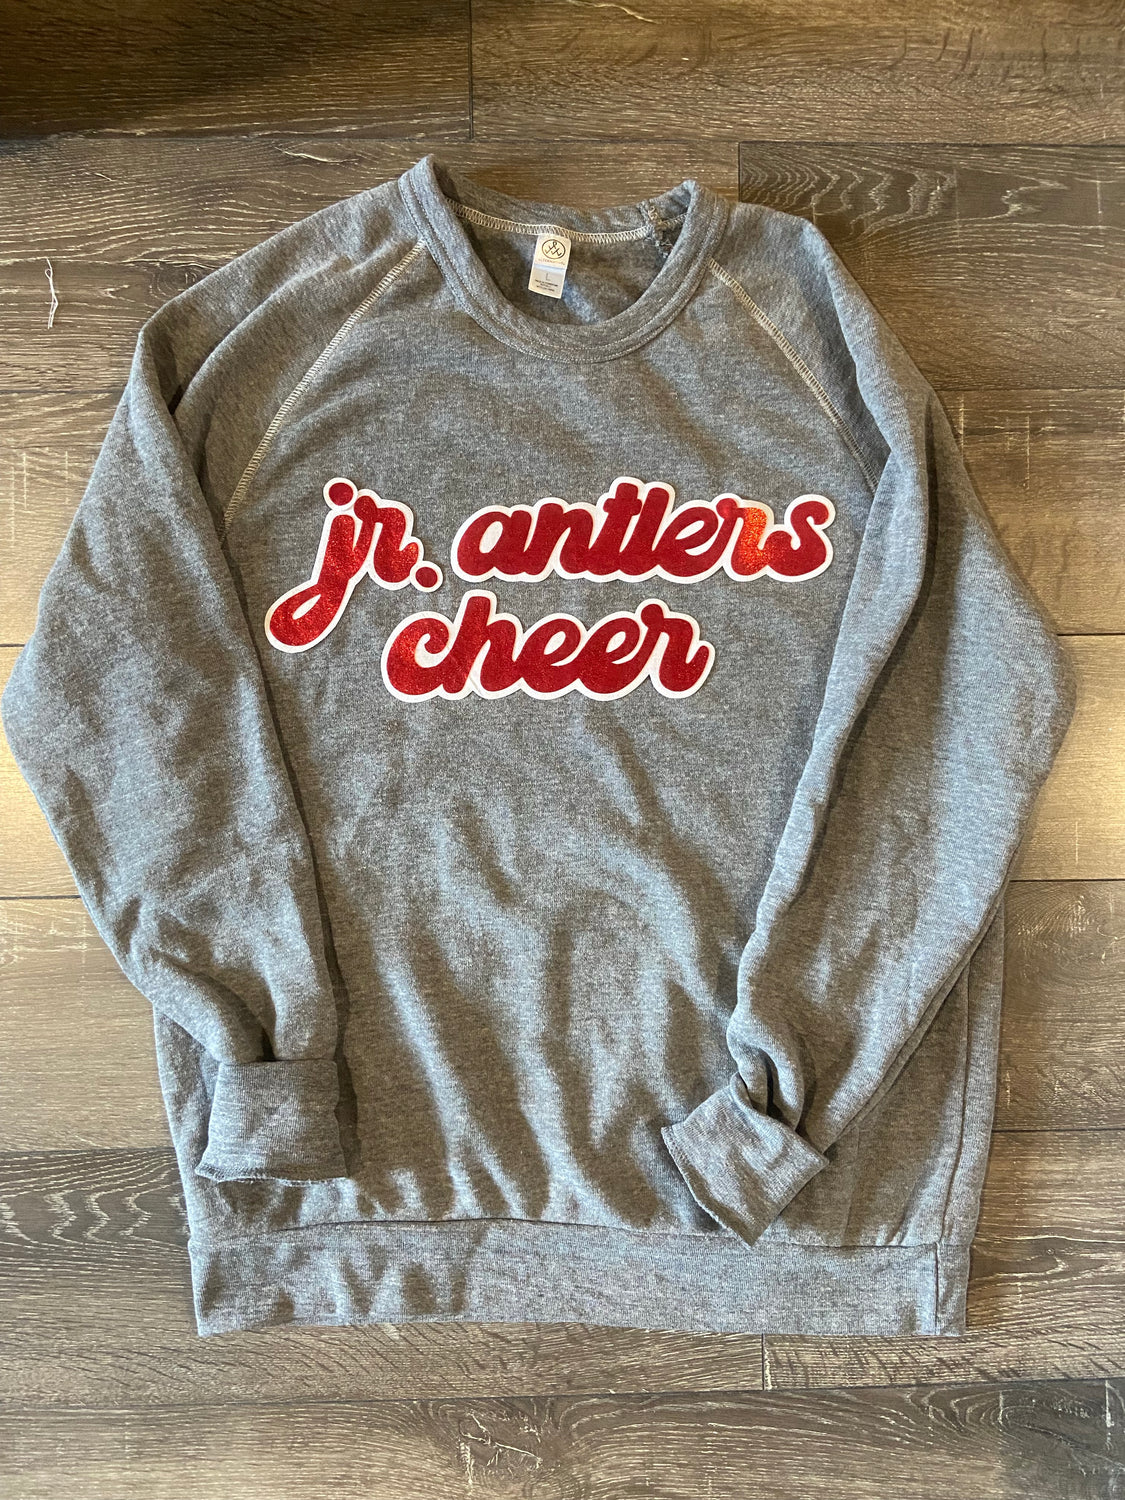 JR. ANTLERS CHEER - GREY FLEECE CREW